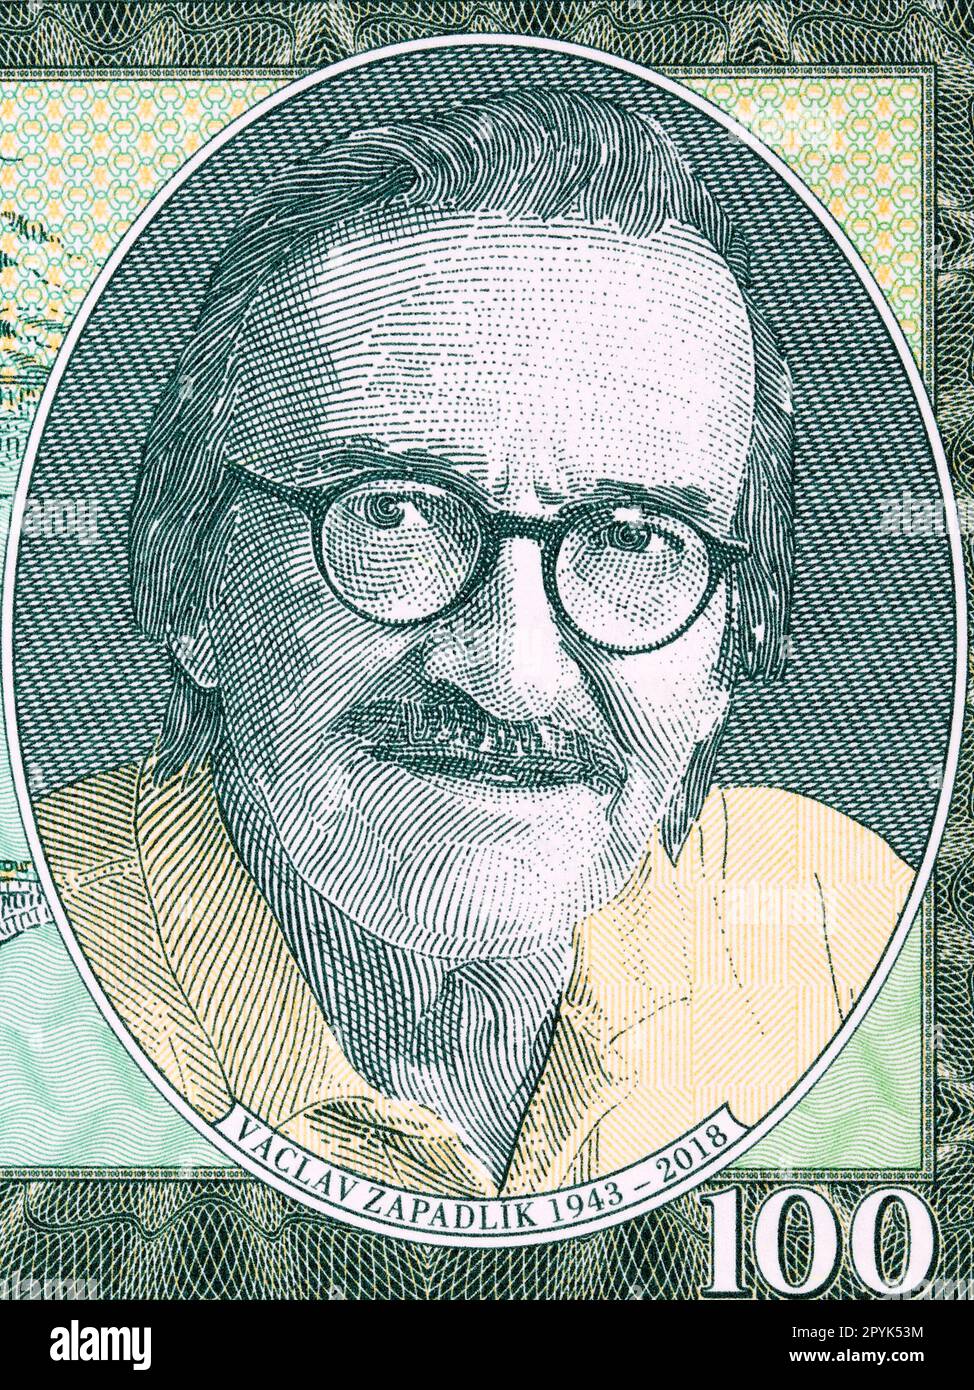 Vaclav ZapadlÃk a portrait from money Stock Photo